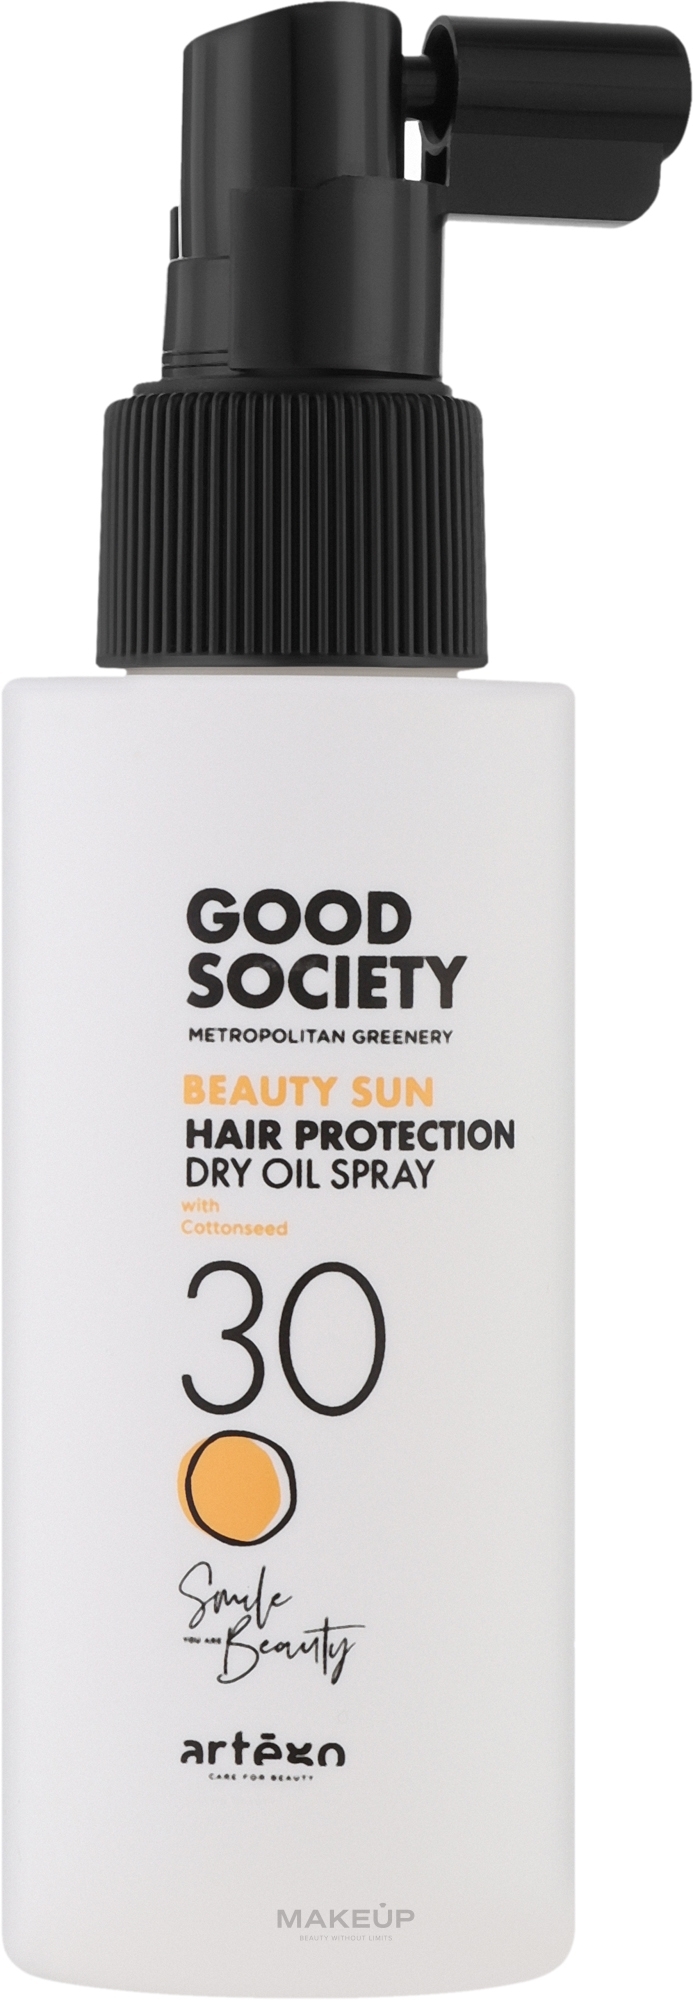 Сонцезахисний сухий олійний спрей для волосся - Artego Good Society Beauty Sun 30 Hair Protection Dry Oil Spray — фото 100ml